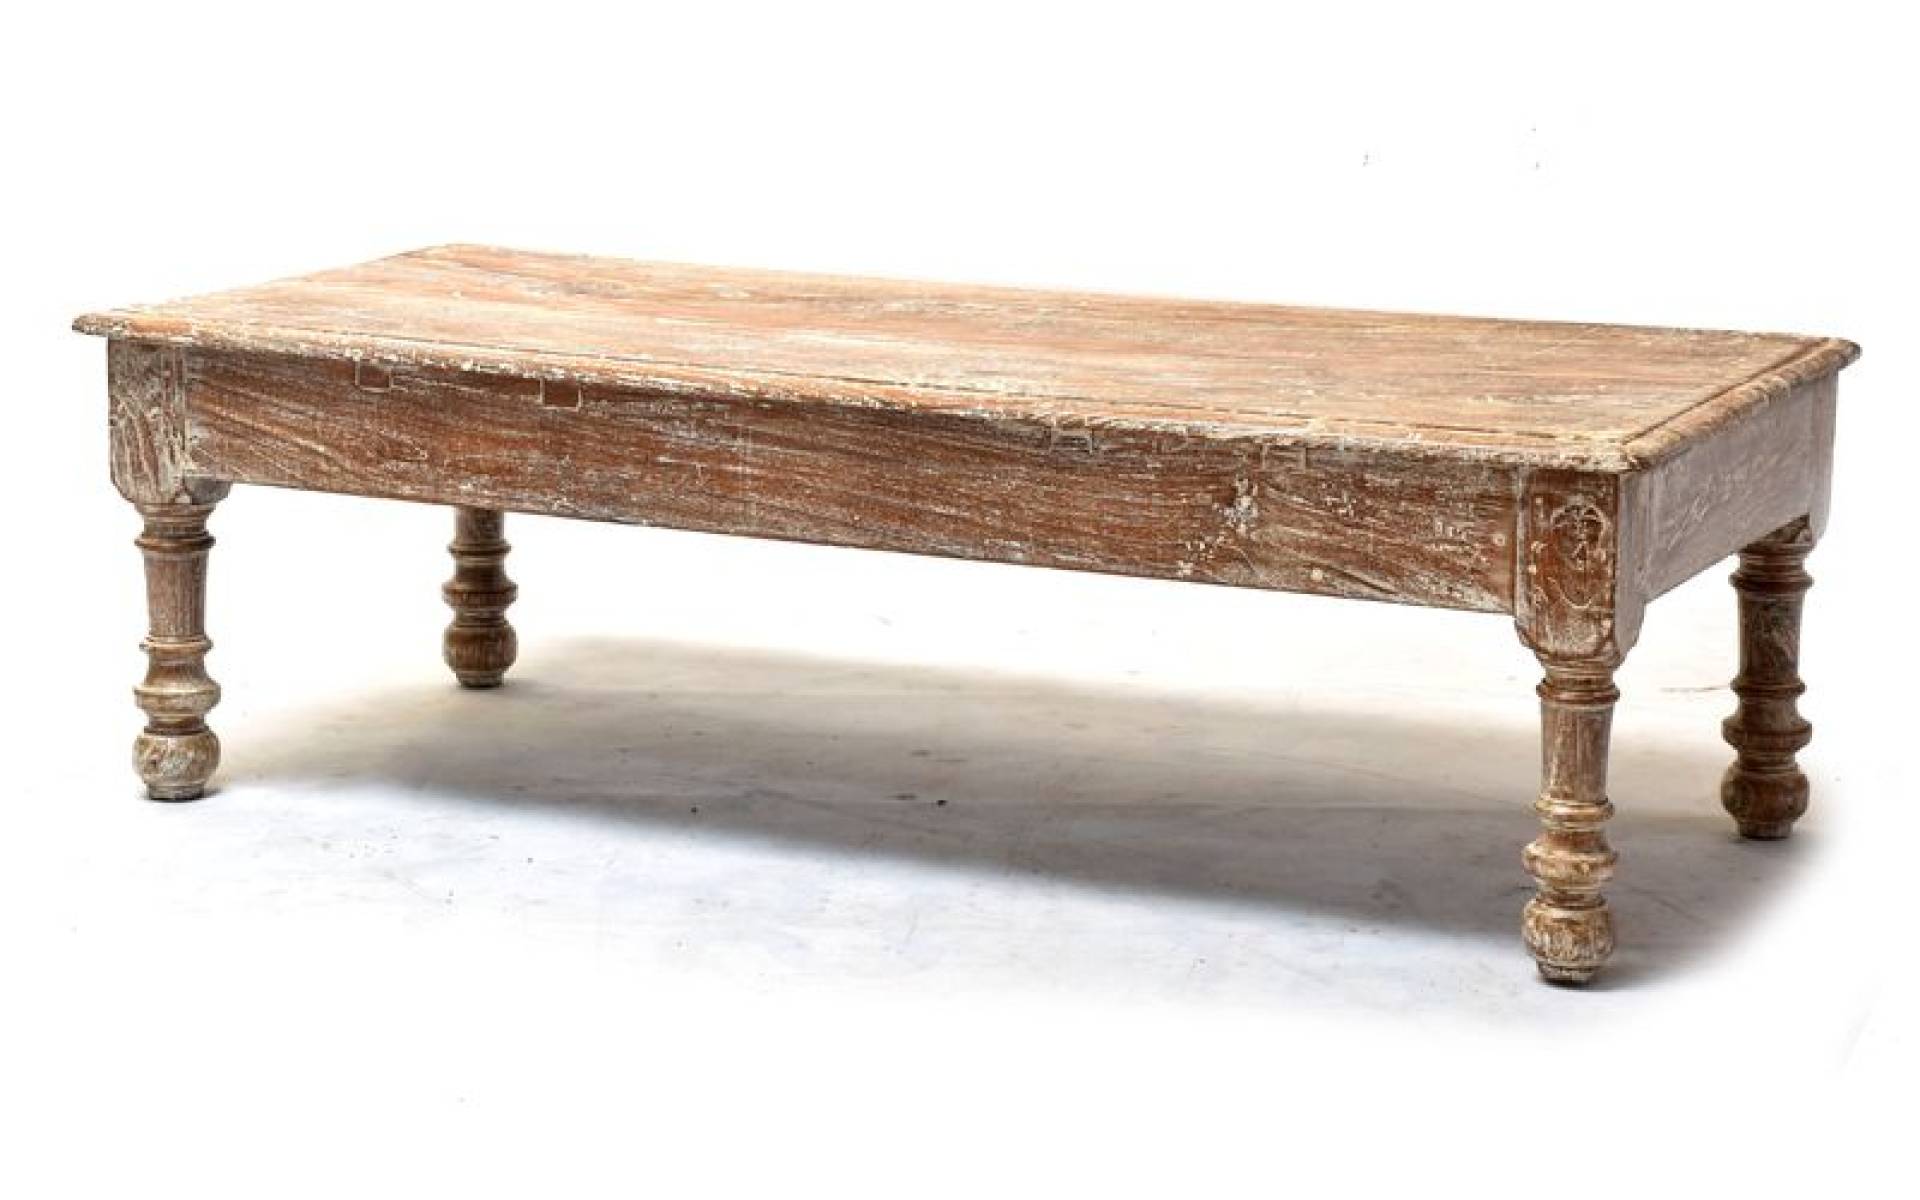 Konferenčný stolík z teakového dreva, 159x68x49cm